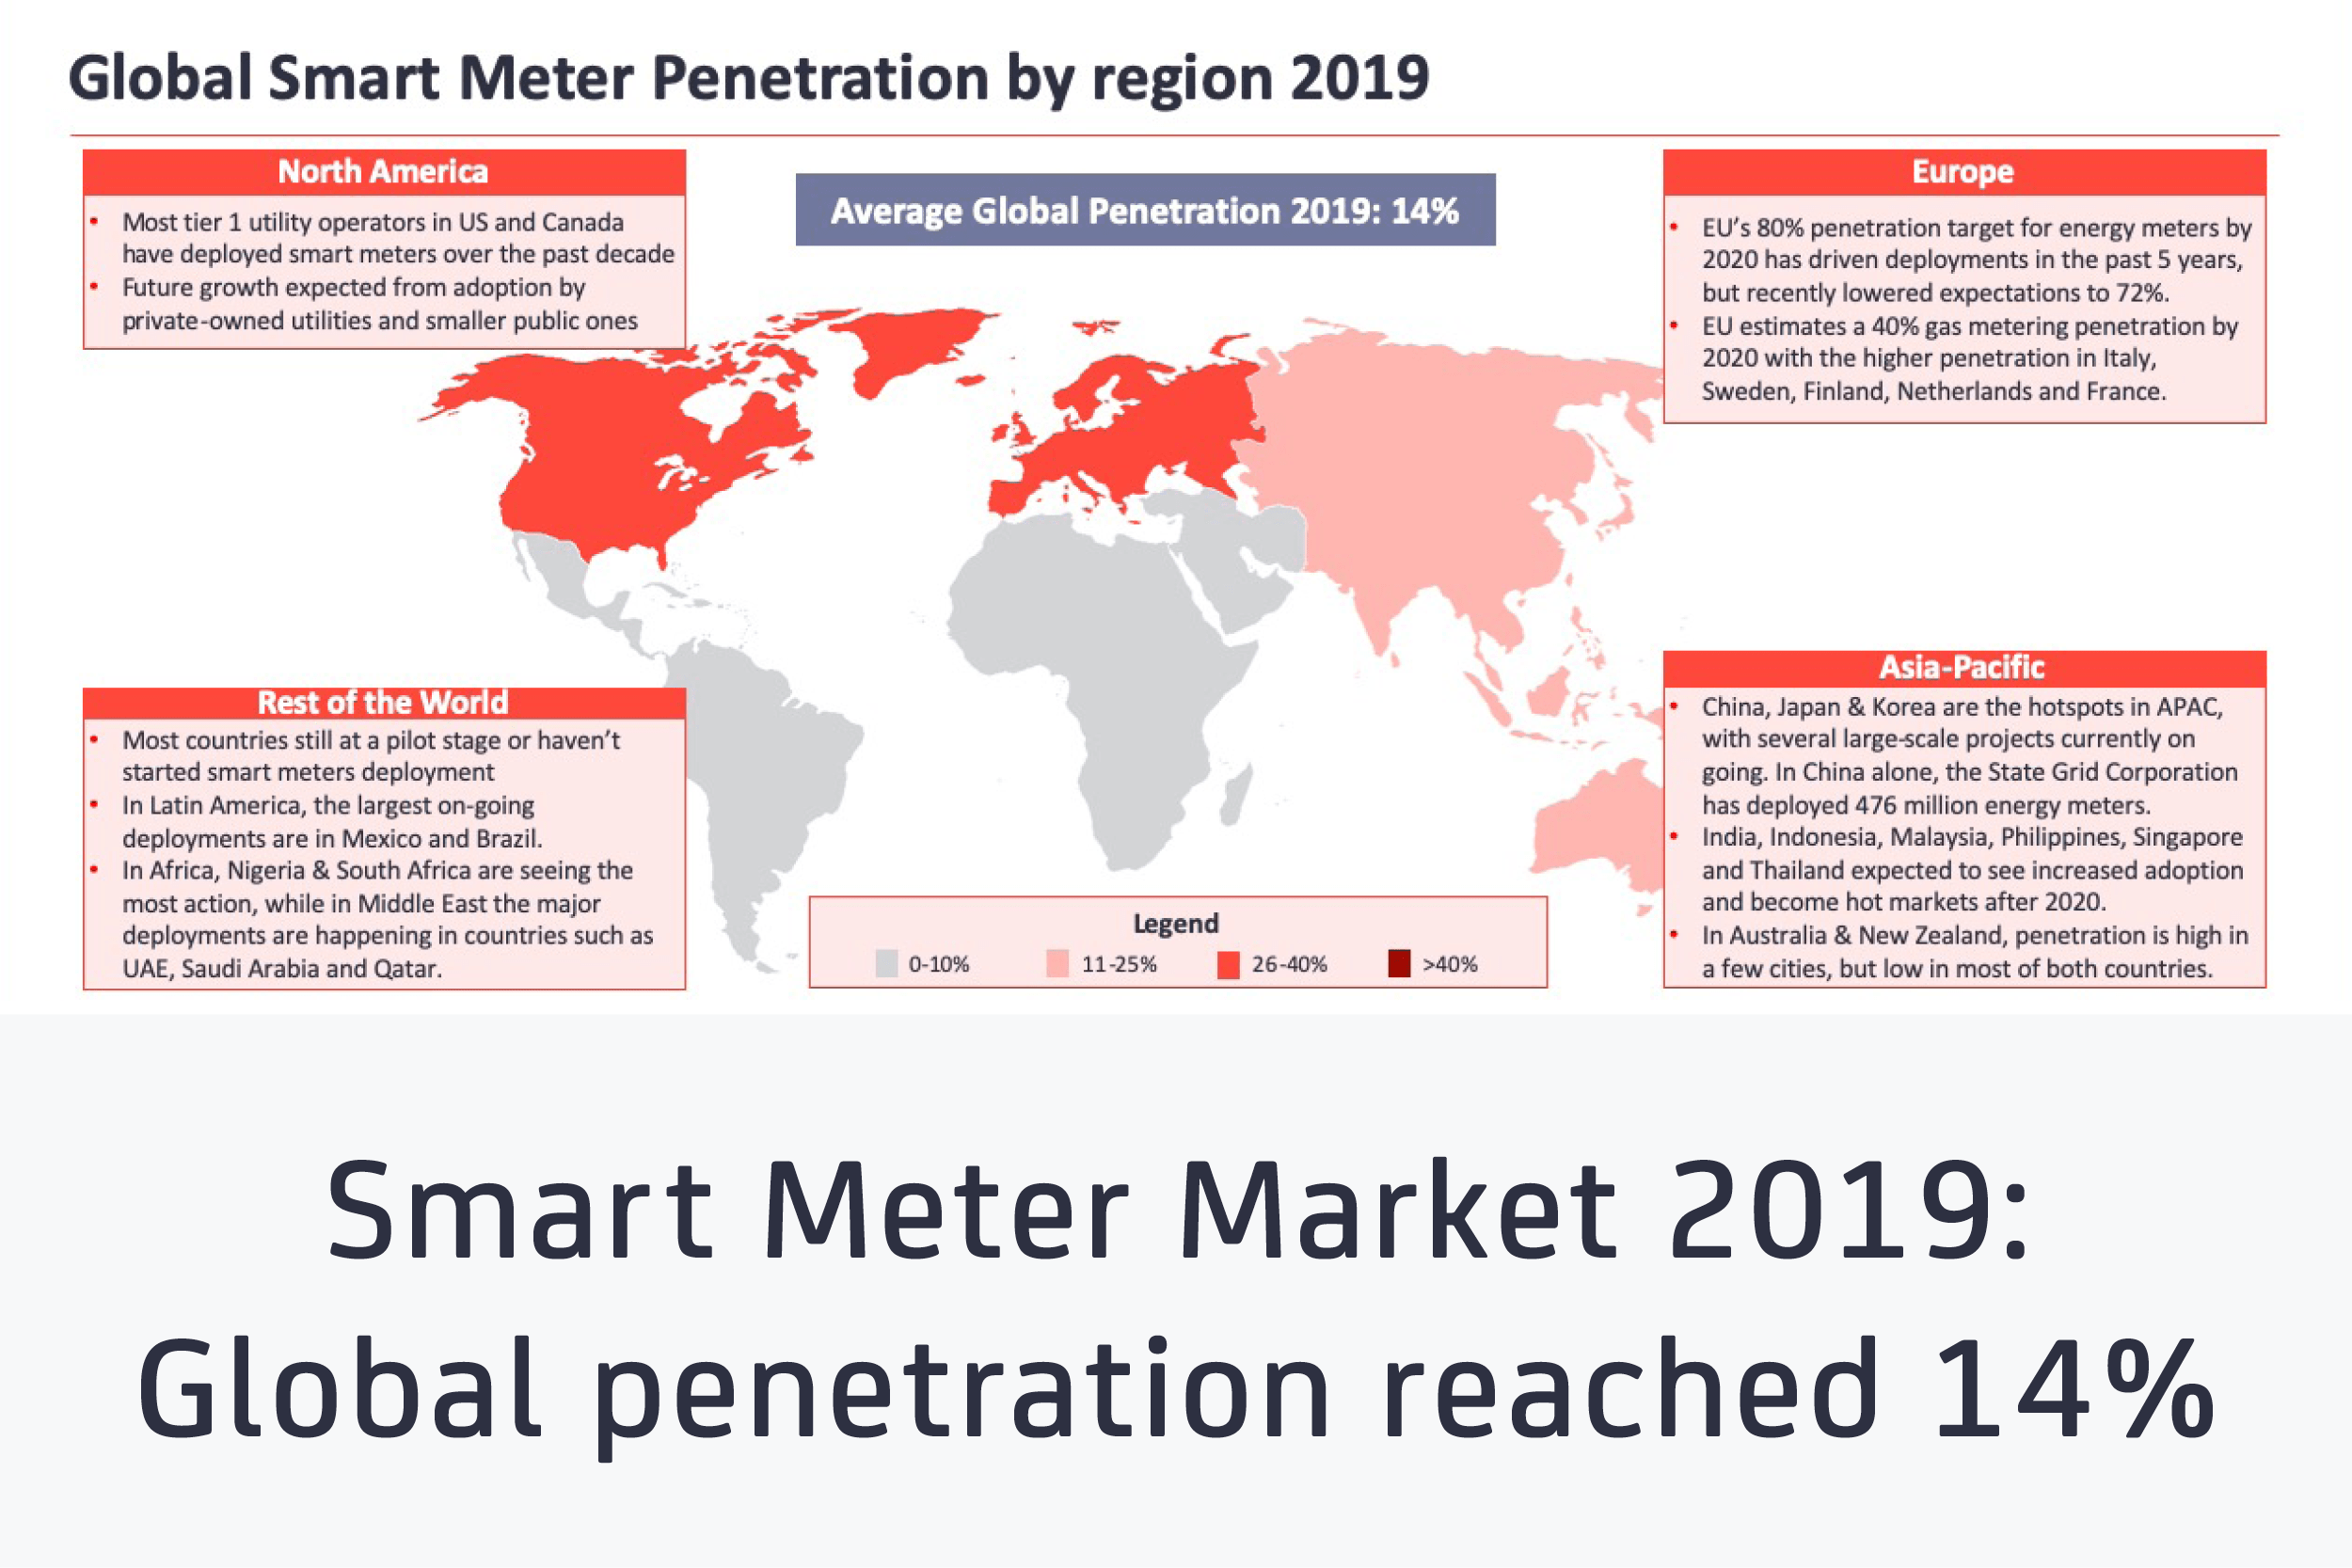 Smart Meter Market 2019 feat image